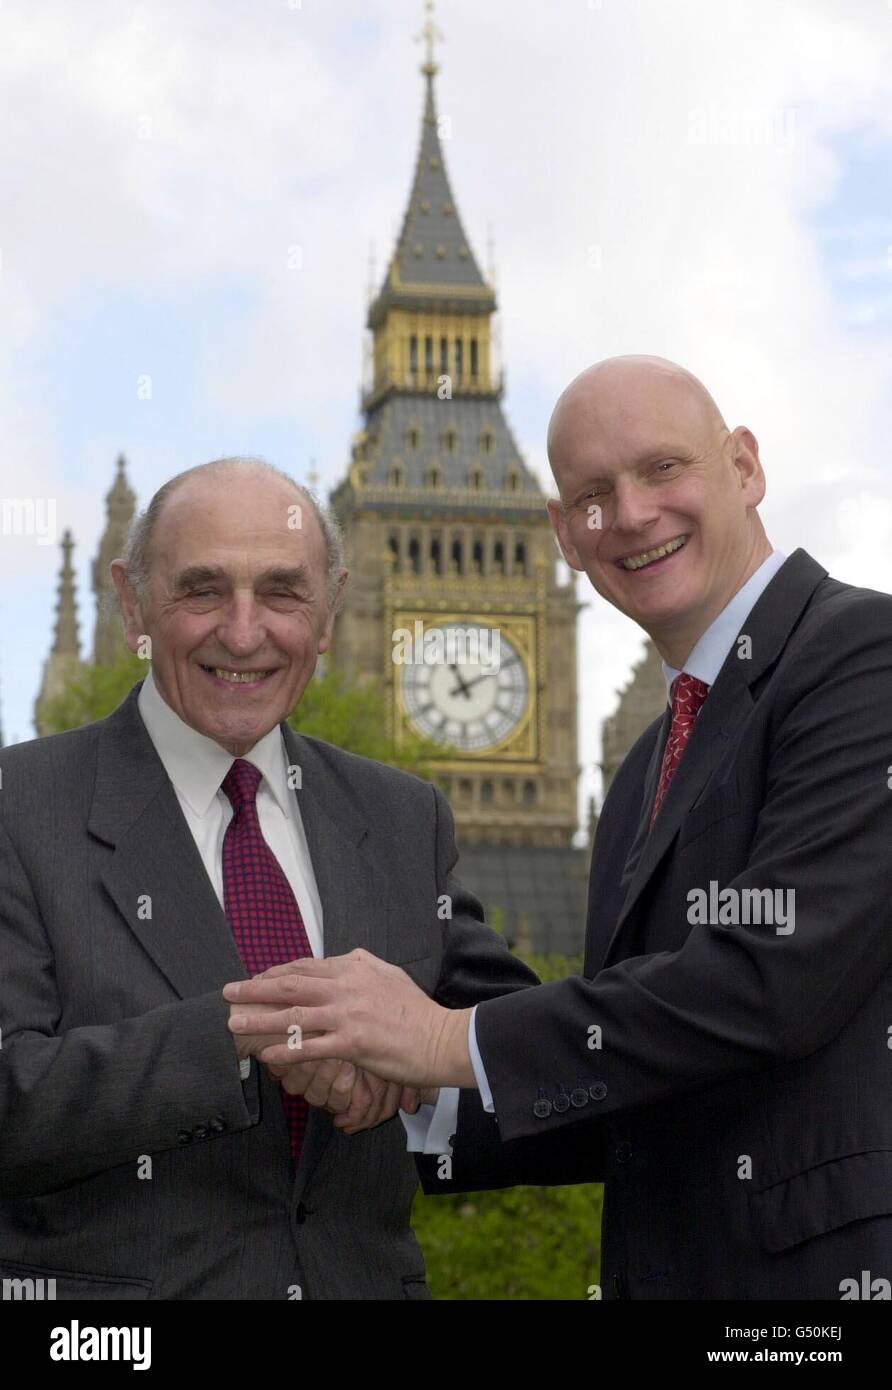 Robert Sheldon, député d'Ashton sous Lyme (à gauche), rencontre Duncan Goodhew, à l'extérieur des chambres du Parlement. Le médaillé d'or olympique aide à réanimer M. Sheldon, lorsqu'il a récemment subi une crise cardiaque à St James's Park, Londres. Banque D'Images